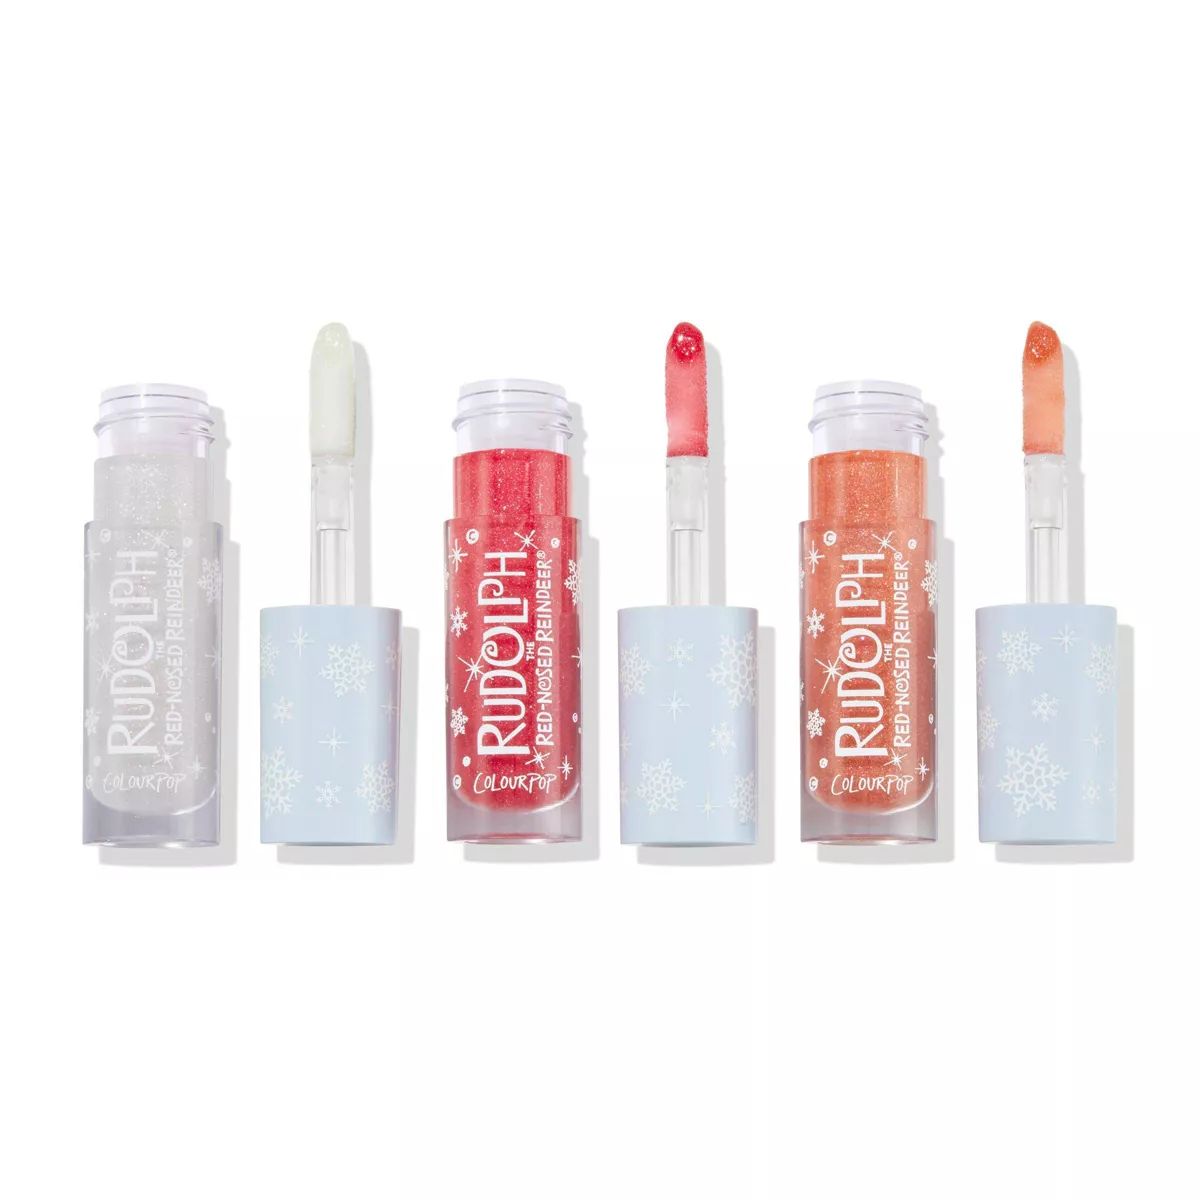 ColourPop Couple of Misfits Lux Gloss Lip Makeup Trio Gift Set - 0.42oz/3pc | Target